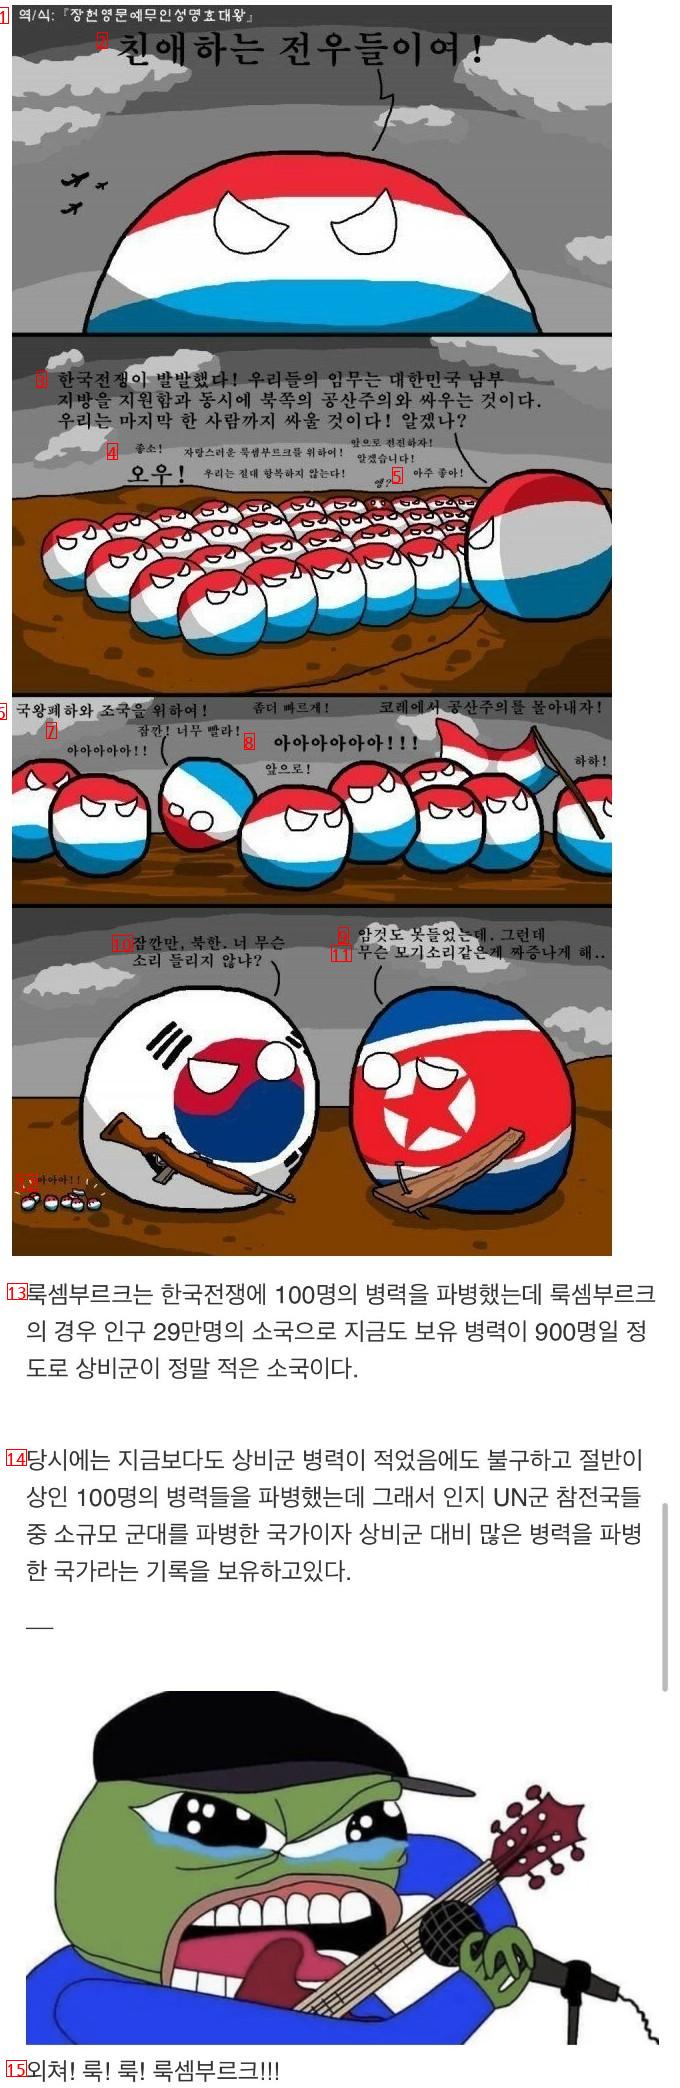 한국전쟁시 군 절반이상을 파병한 국가